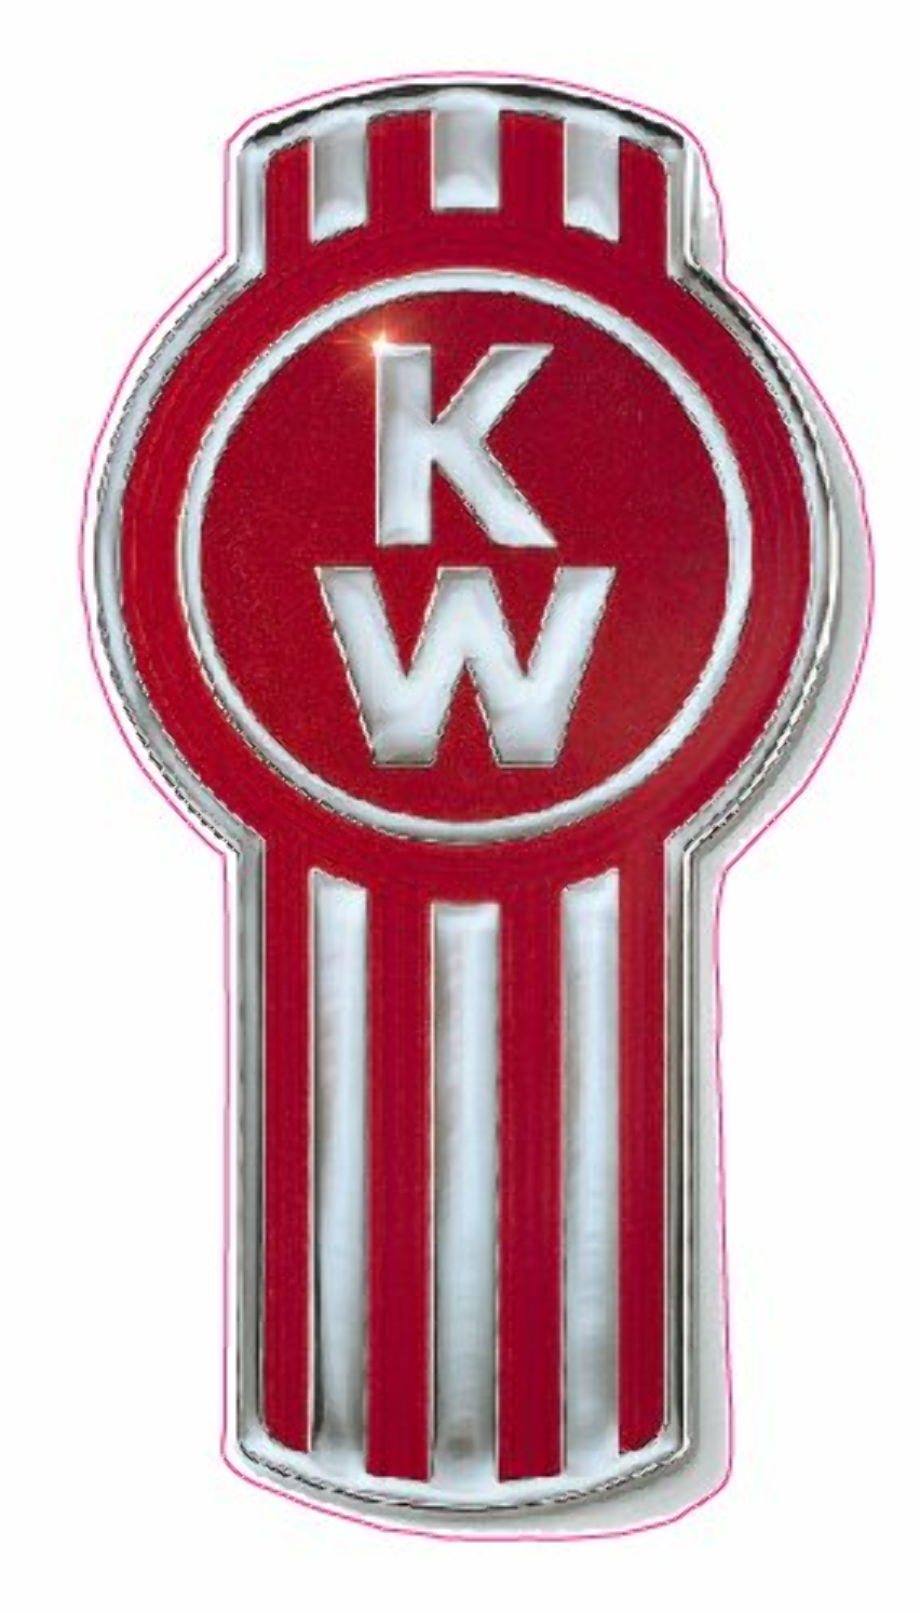 Download High Quality kenworth logo sticker Transparent PNG Images